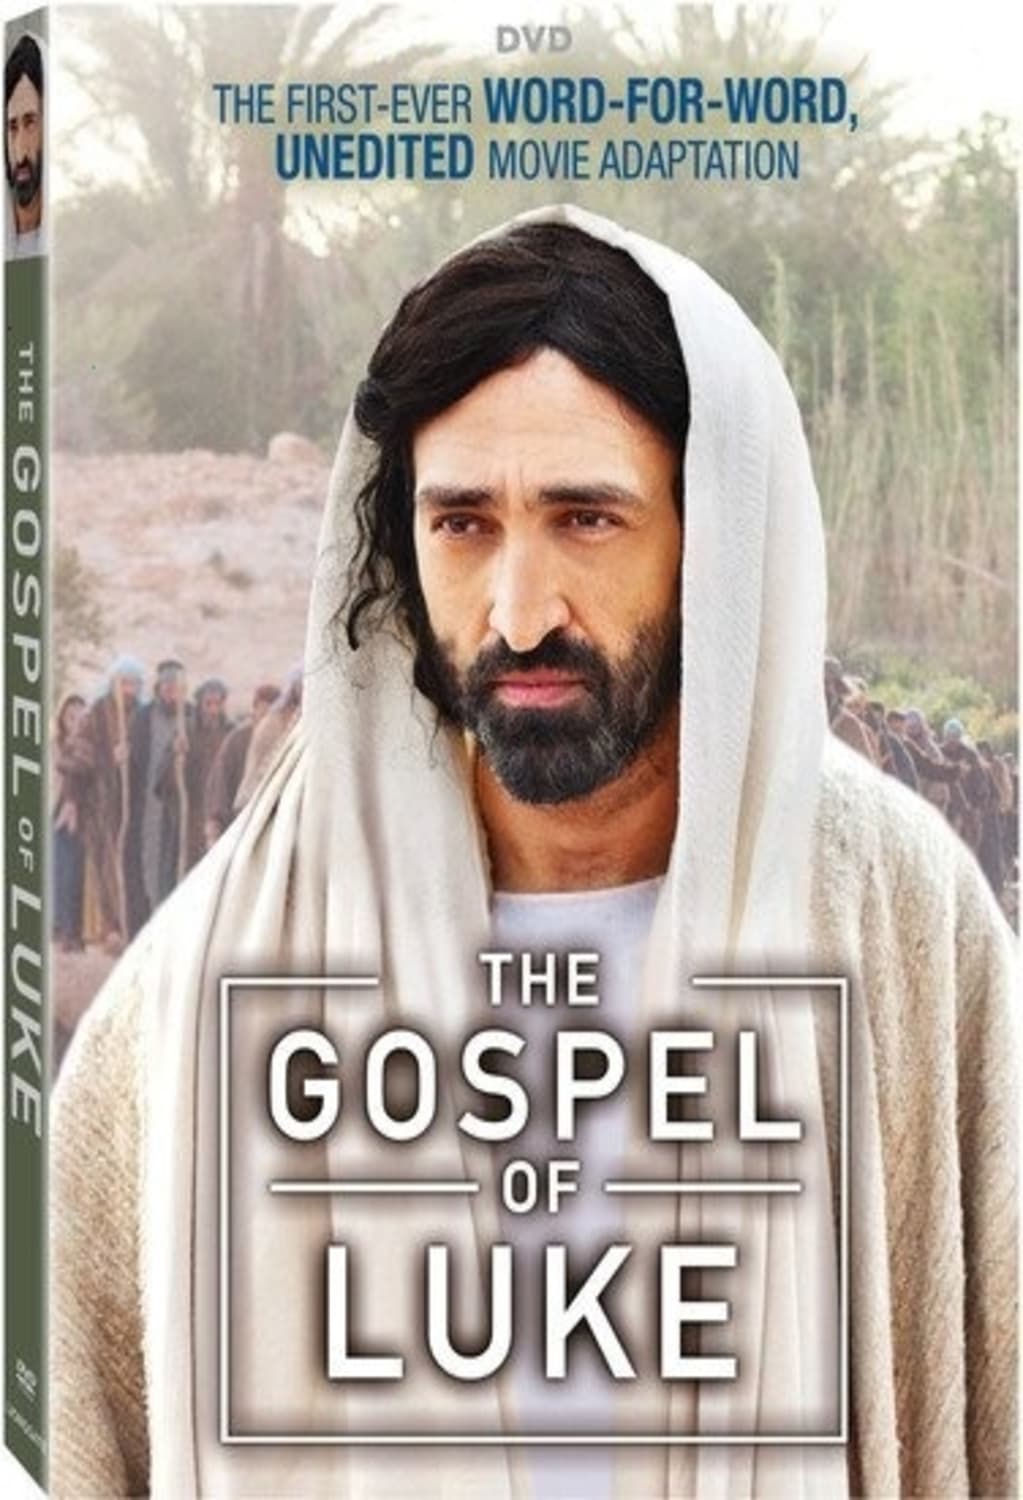 The Gospel of Luke (DVD) on MovieShack